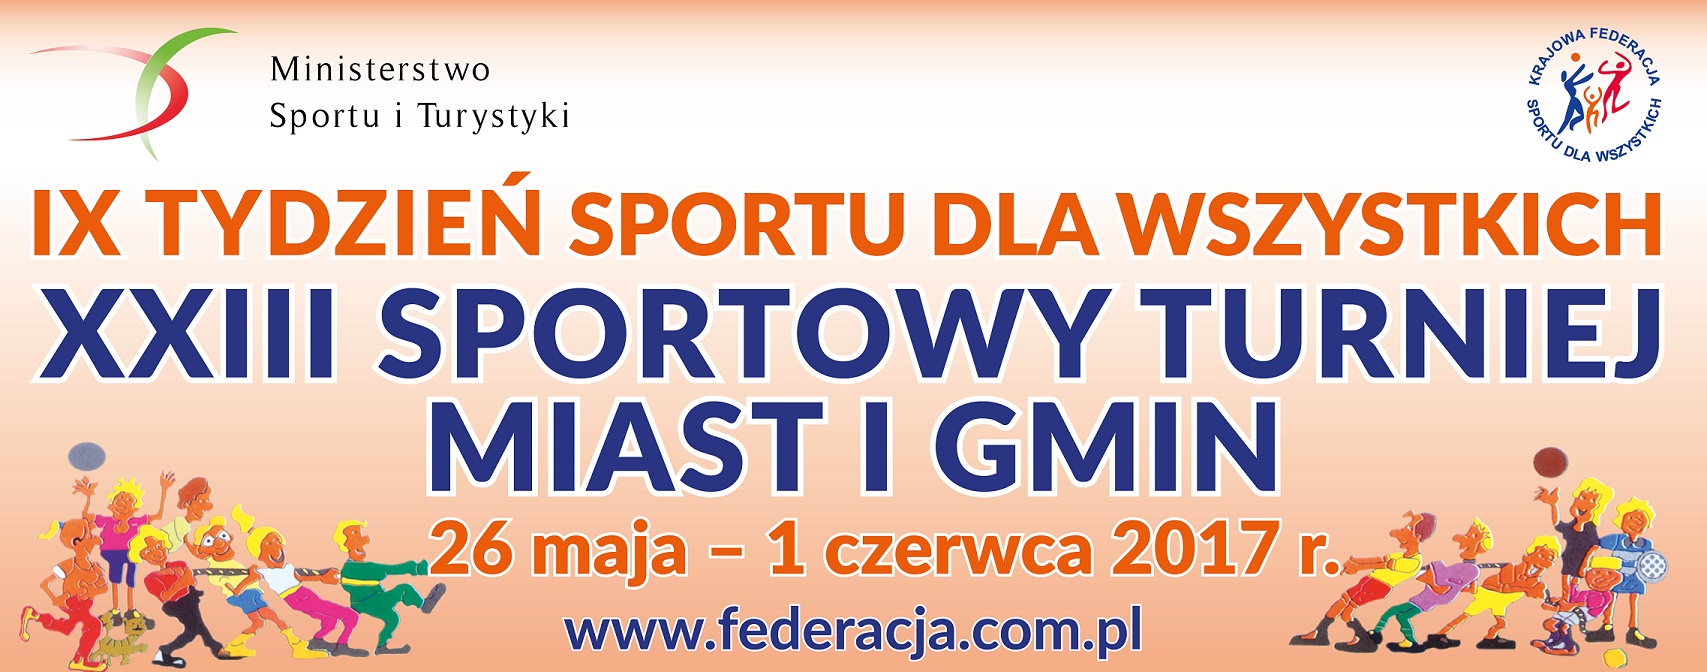 Gmina Limanowa uczestnikiem XXIII Sportowego Turnieju Miast i Gmin! - zdjęcie główne